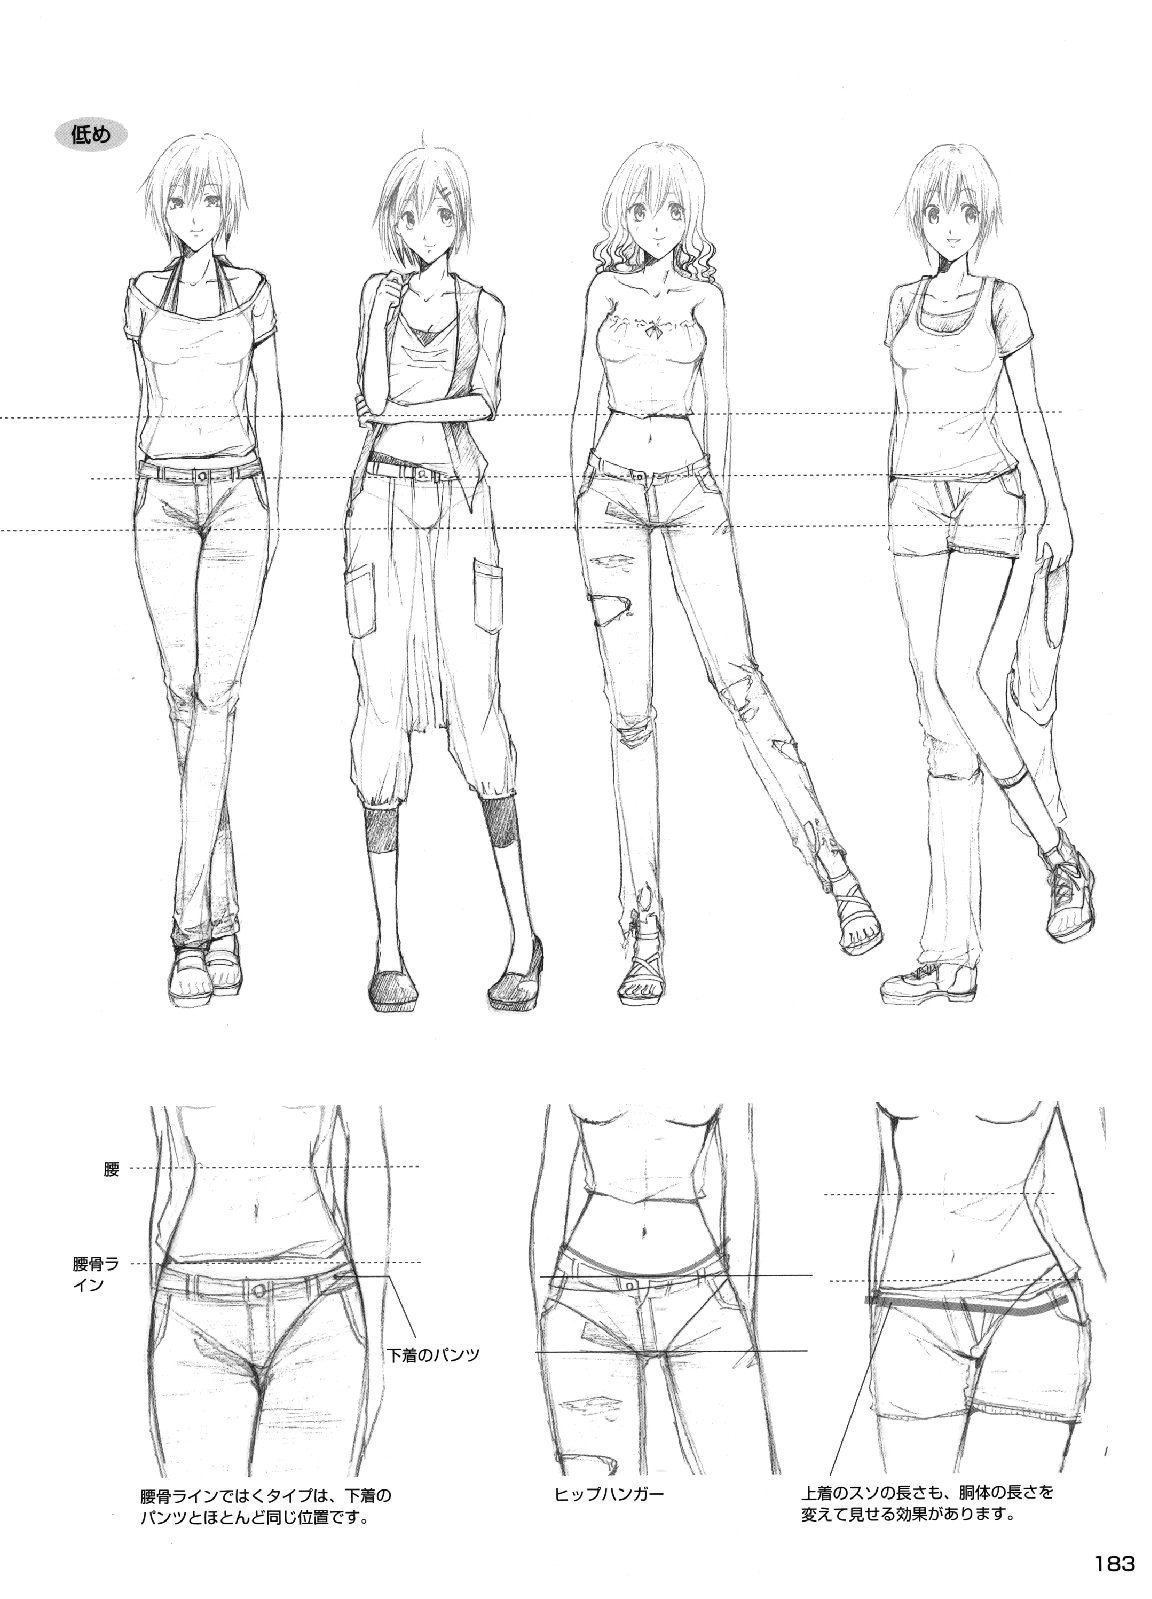 drawing anime clothes pants drawing manga girl drawing manga drawing tutorials manga